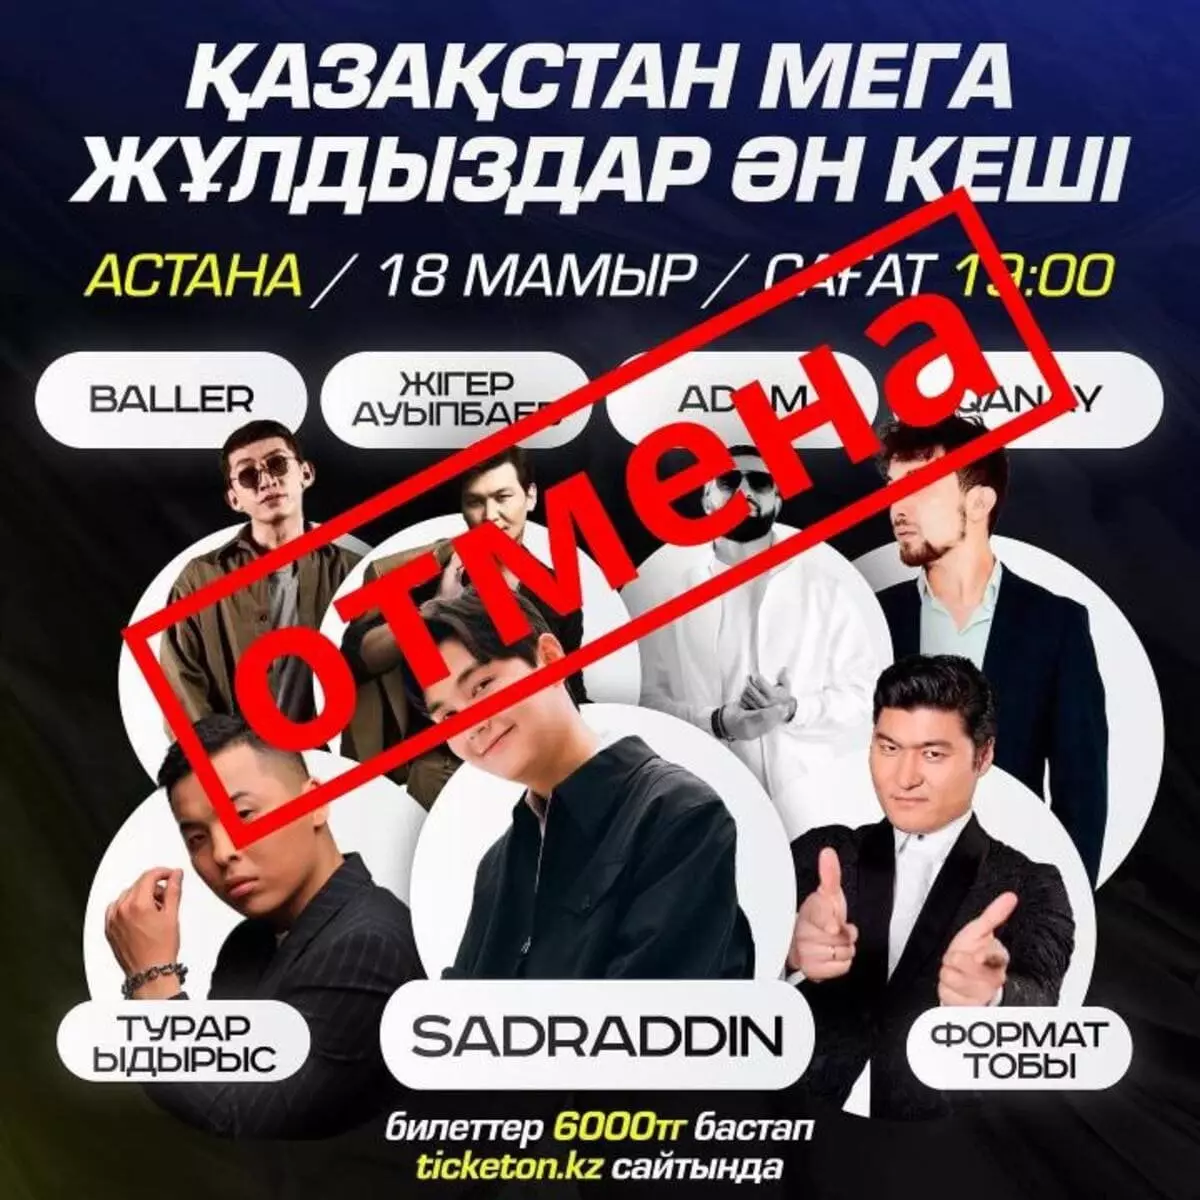 Концерт казахстанских звезд отменили в Астане: акимат сделал заявление